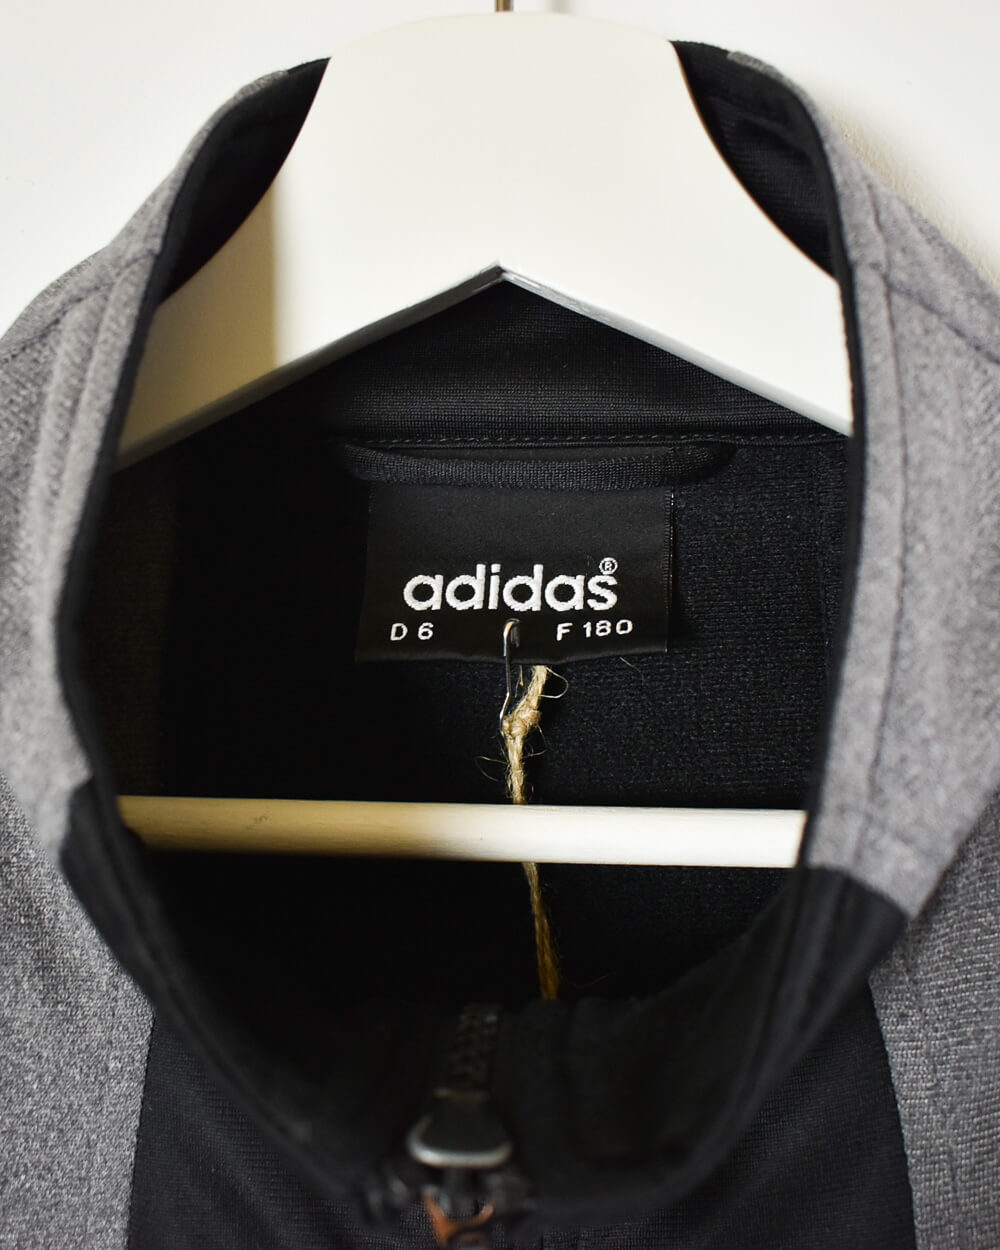 Black Adidas Full Tracksuit - Medium